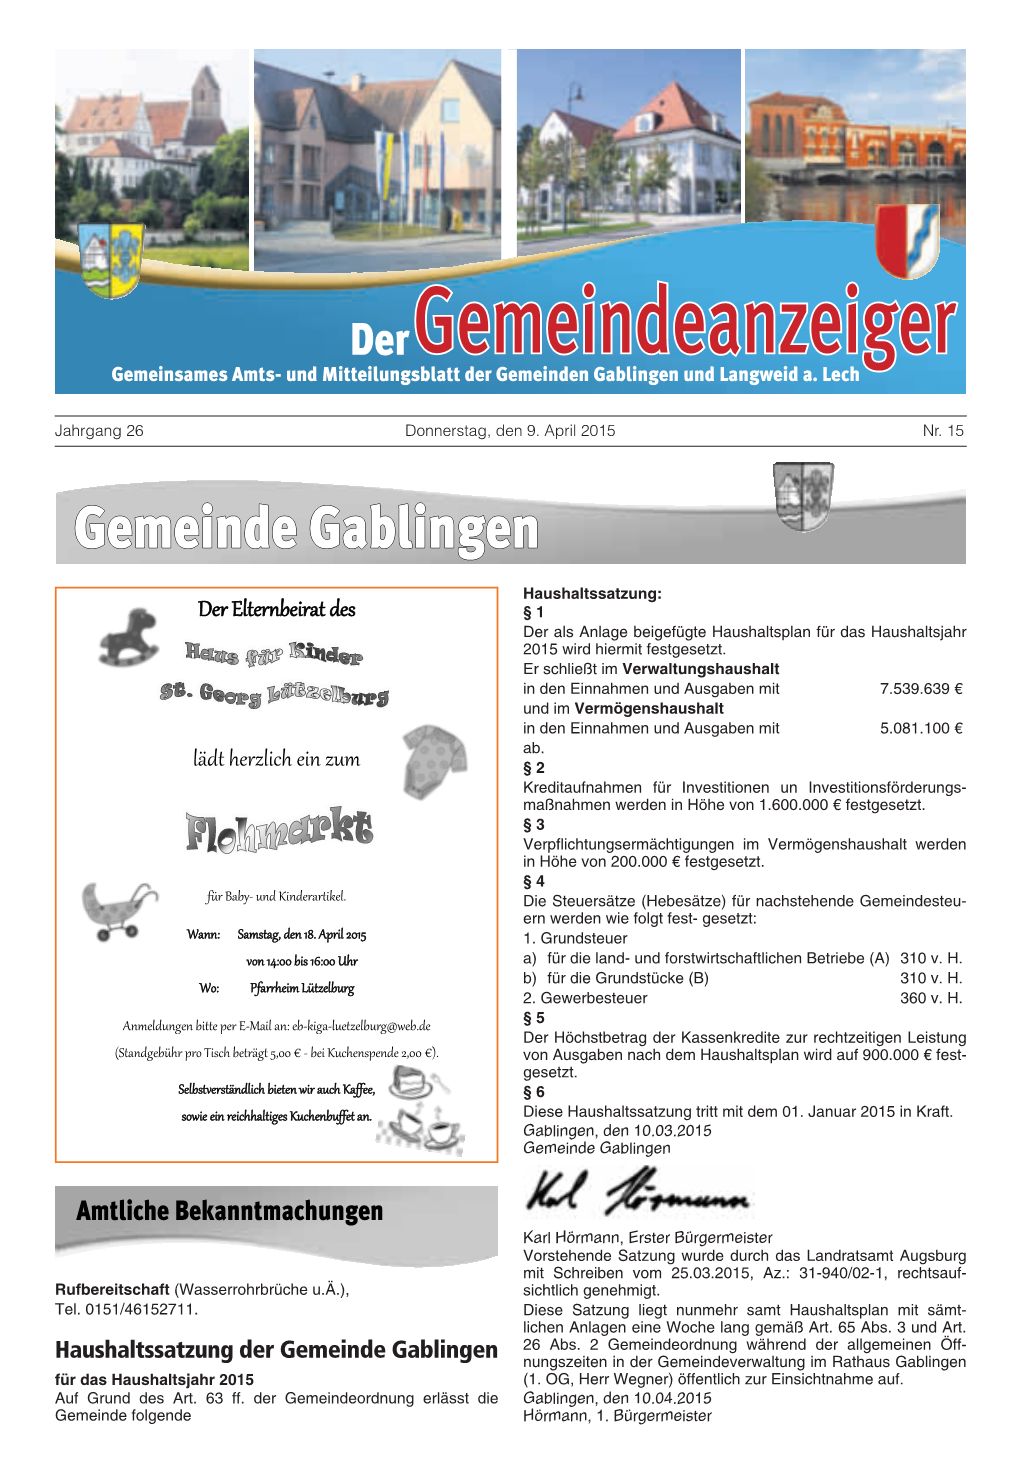 Haushaltssatzung Der Gemeinde Gablingen Nungszeiten in Der Gemeindeverwaltung Im Rathaus Gablingen Für Das Haushaltsjahr 2015 (1